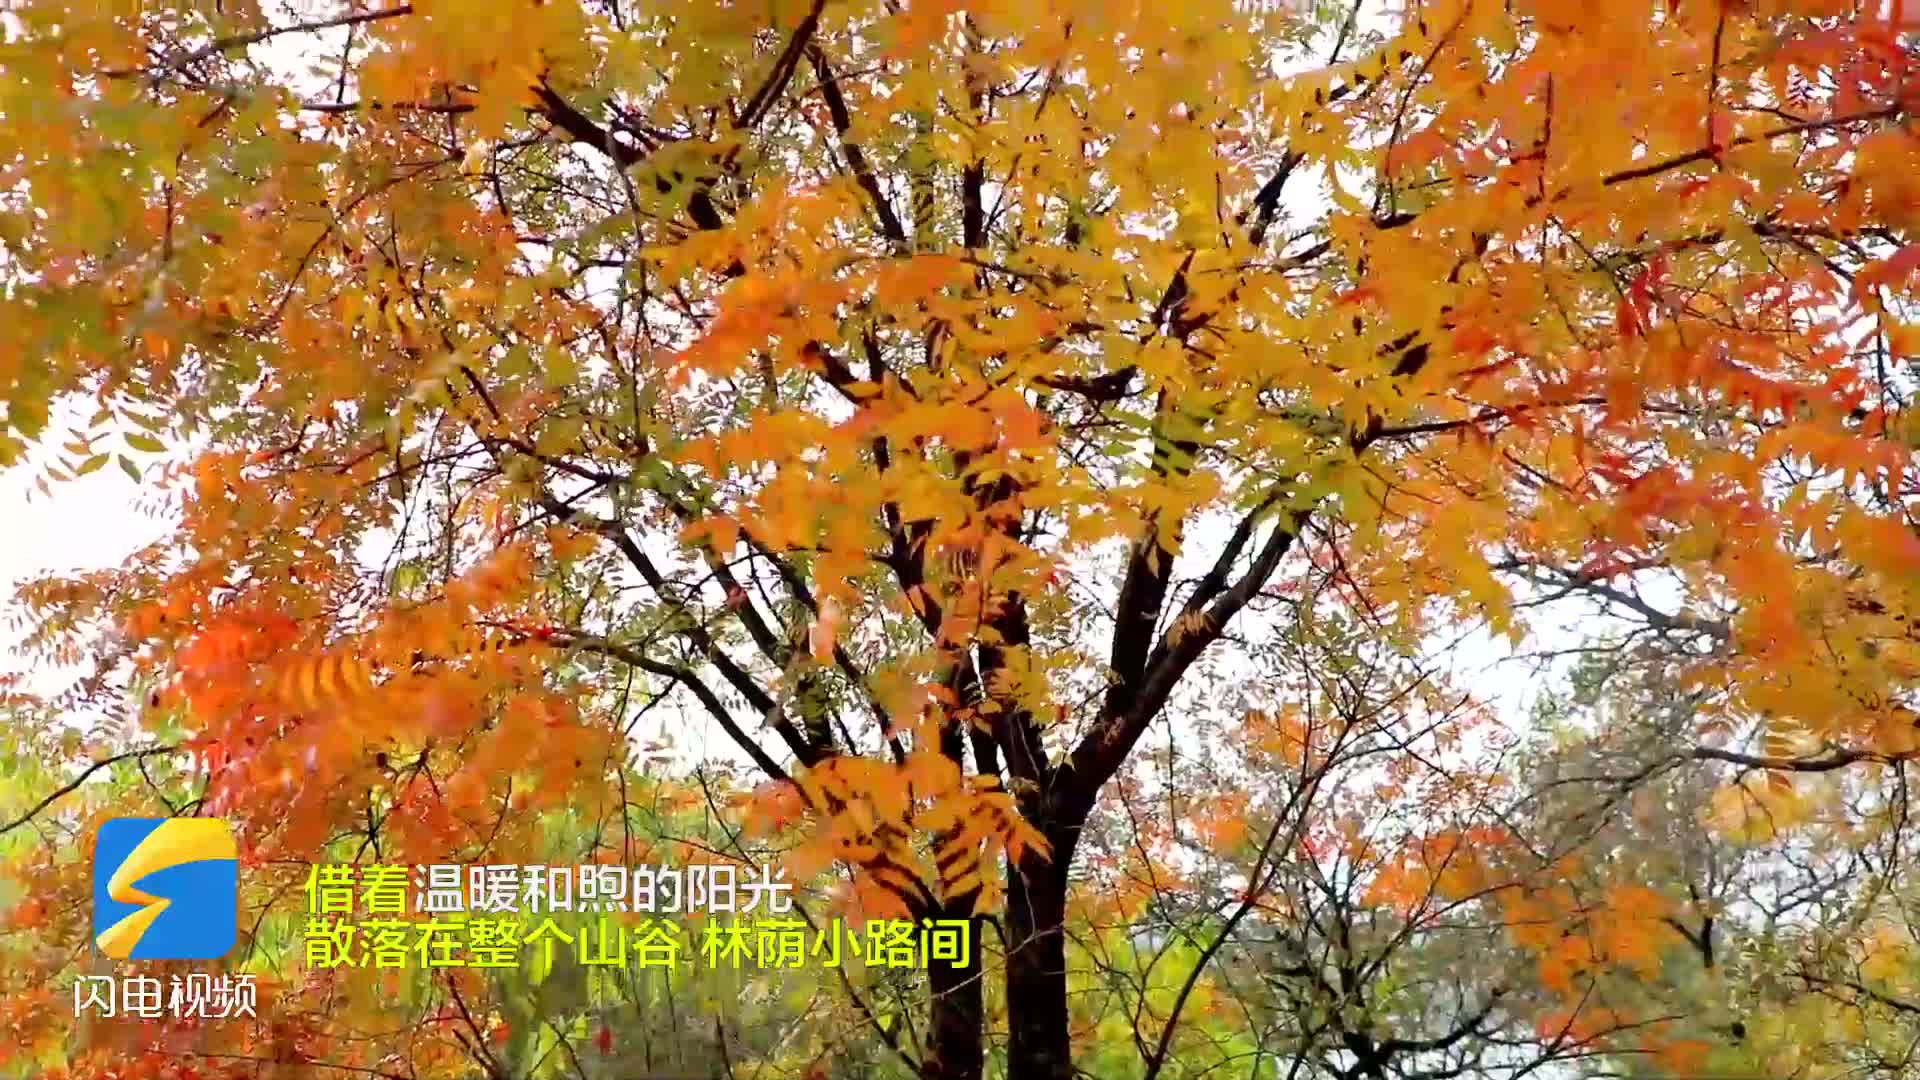 枣庄台儿庄张山子镇黄丘山森林公园初冬景色美如画